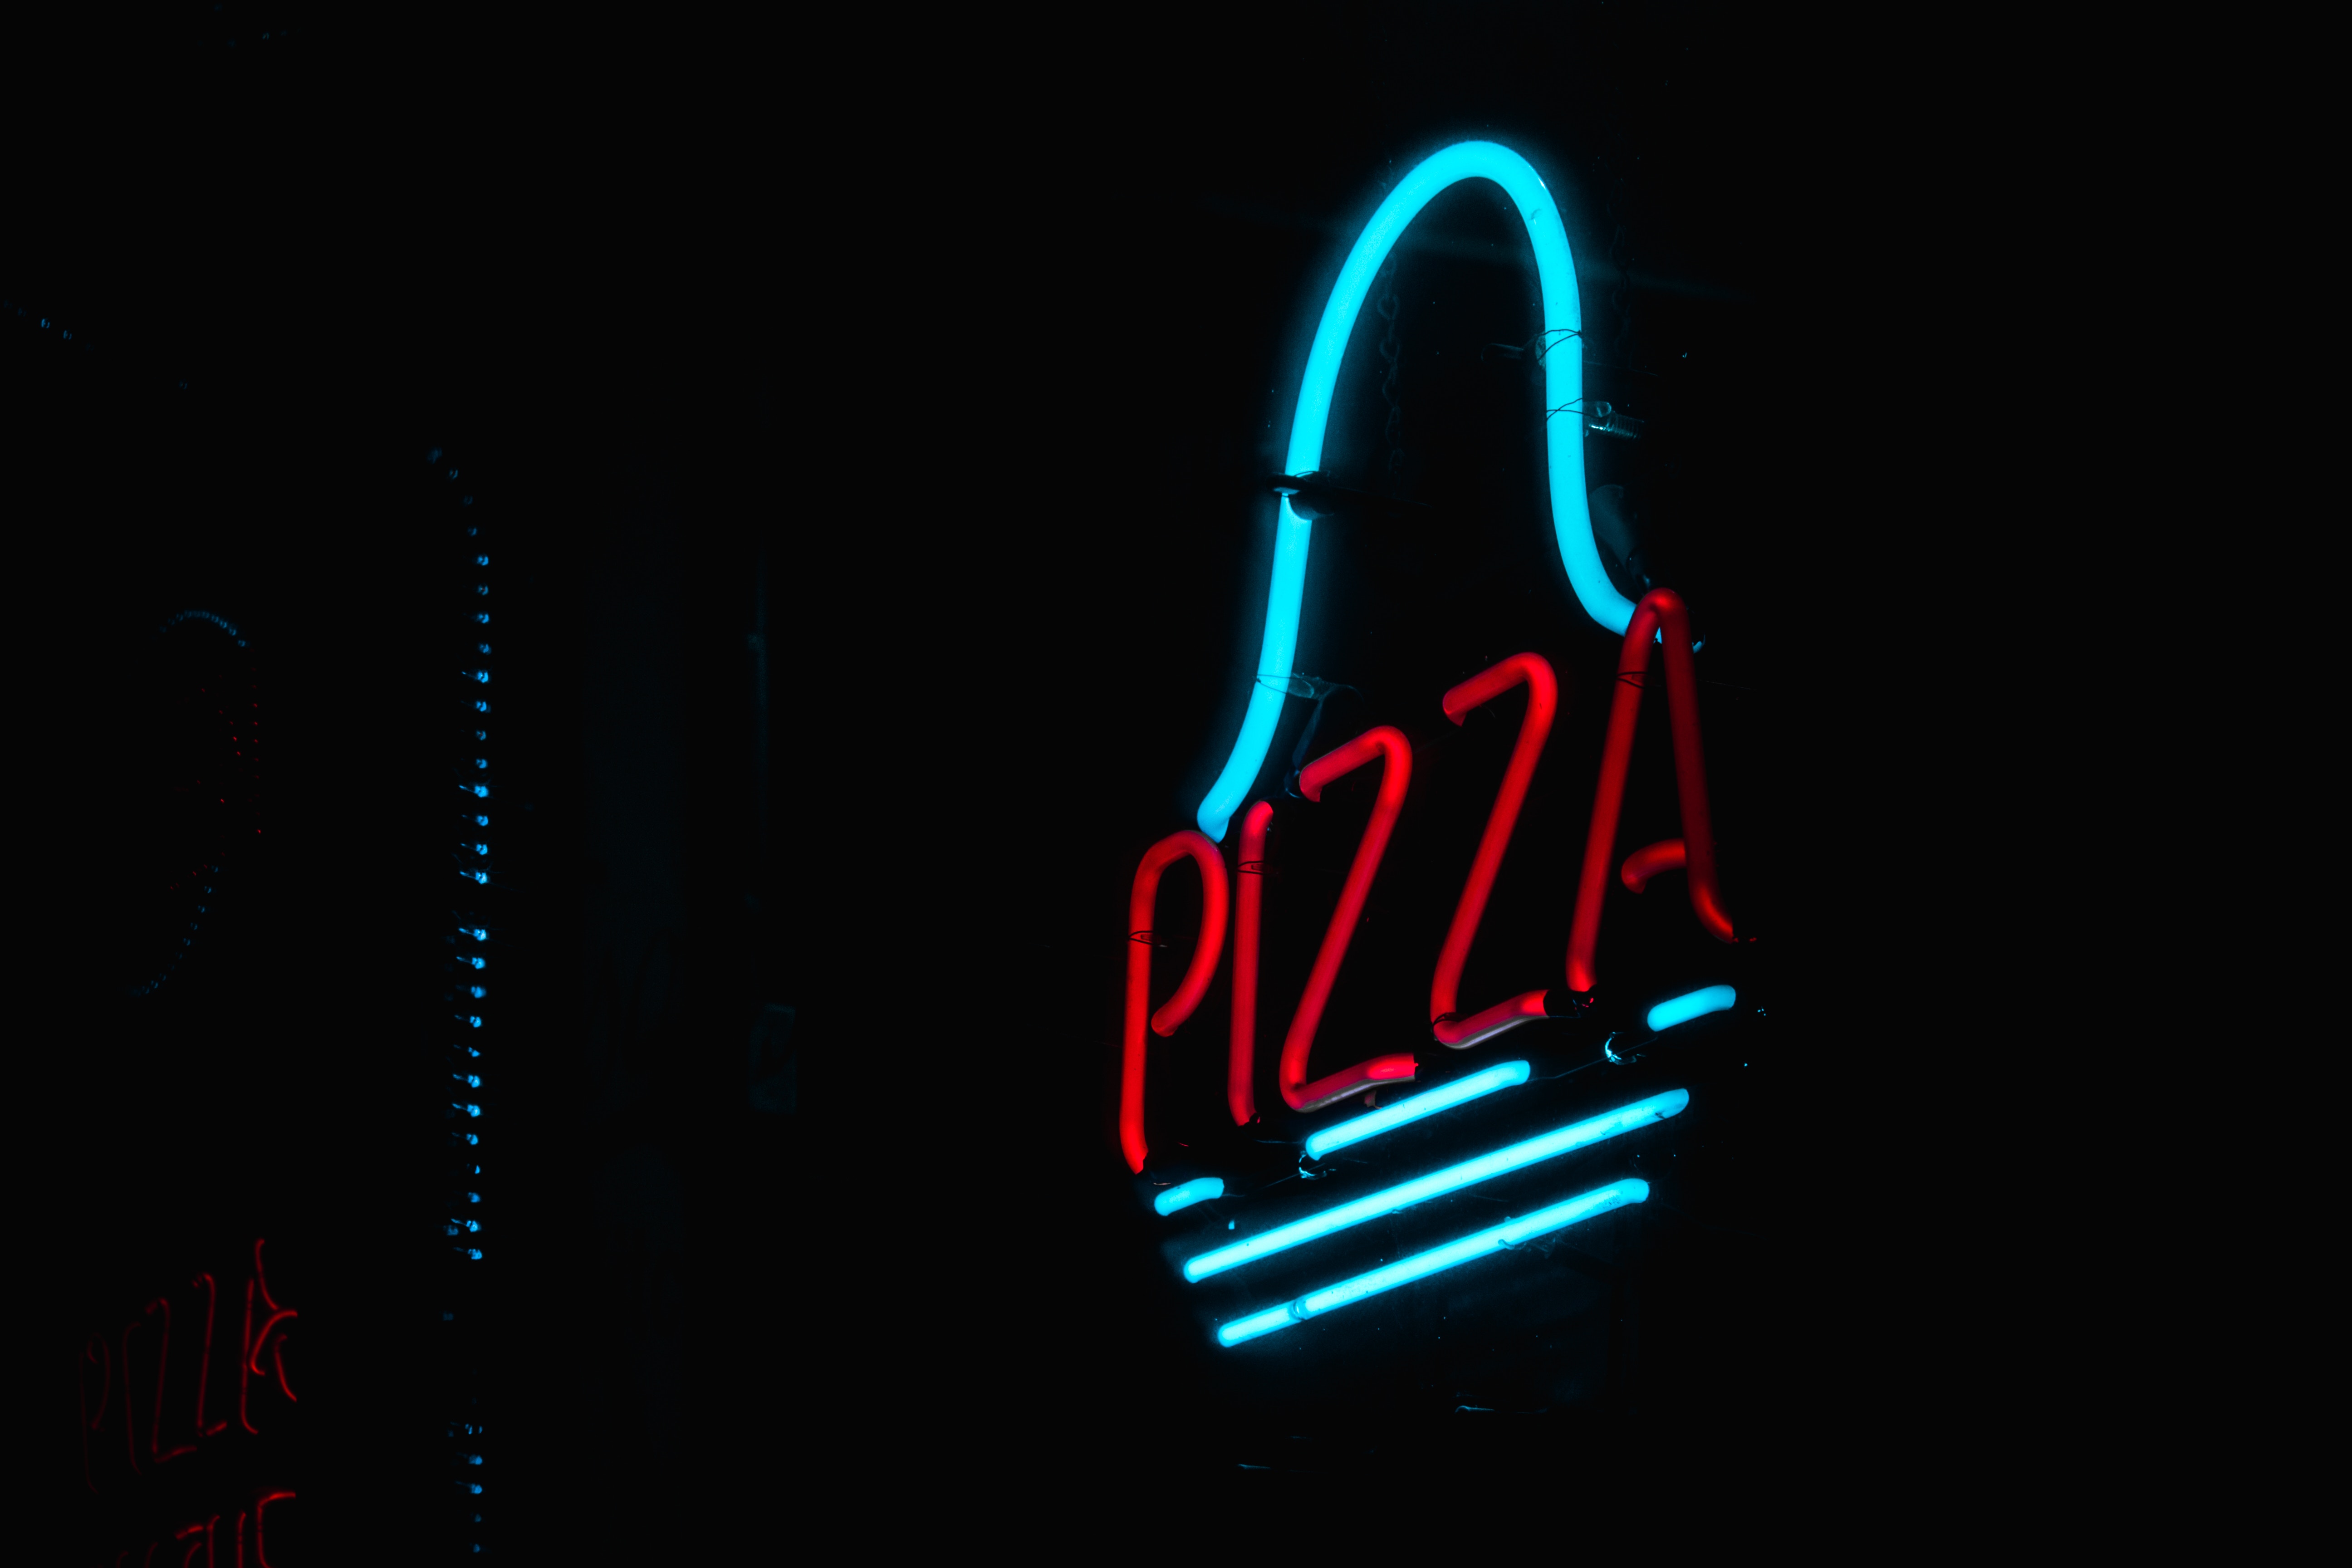 pizza, words, dark, neon, glow, sign, signboard